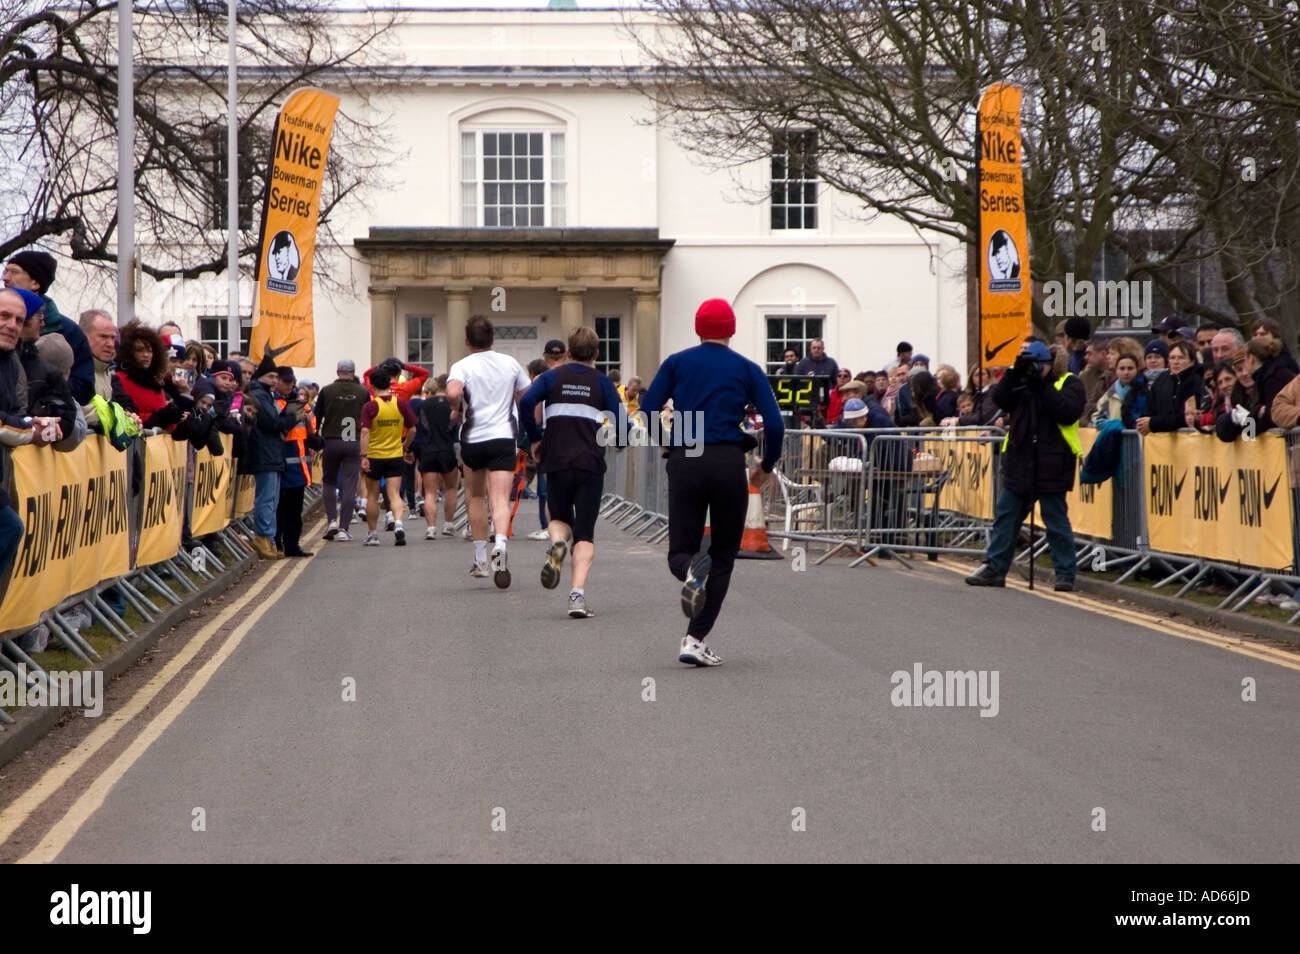 runners running the Nike Milton Keynes half marathon the Open University Stock Photo